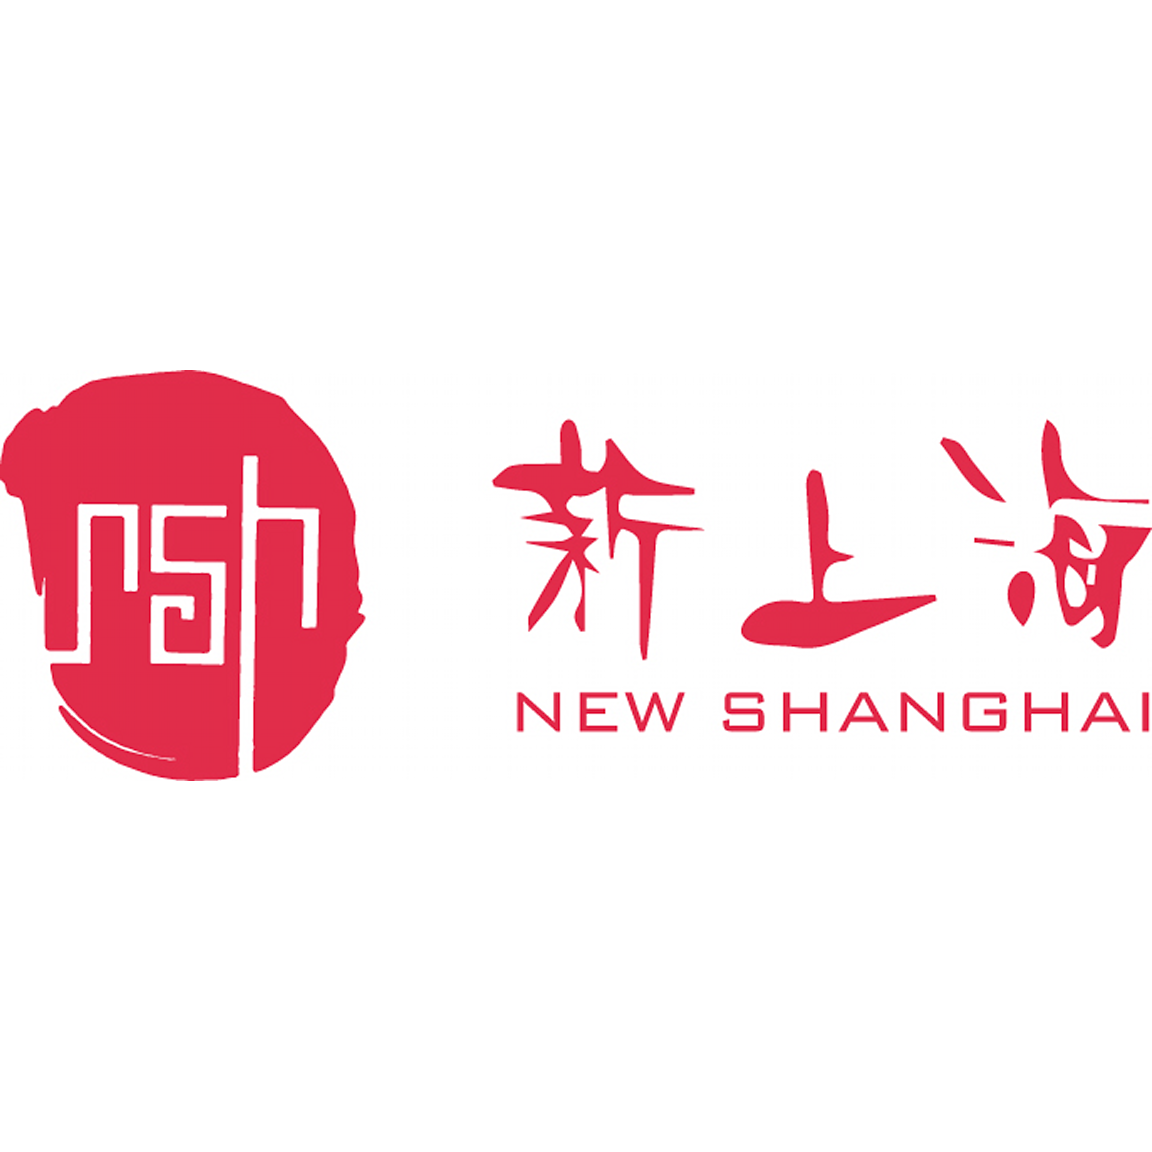 new-shanghai-logo